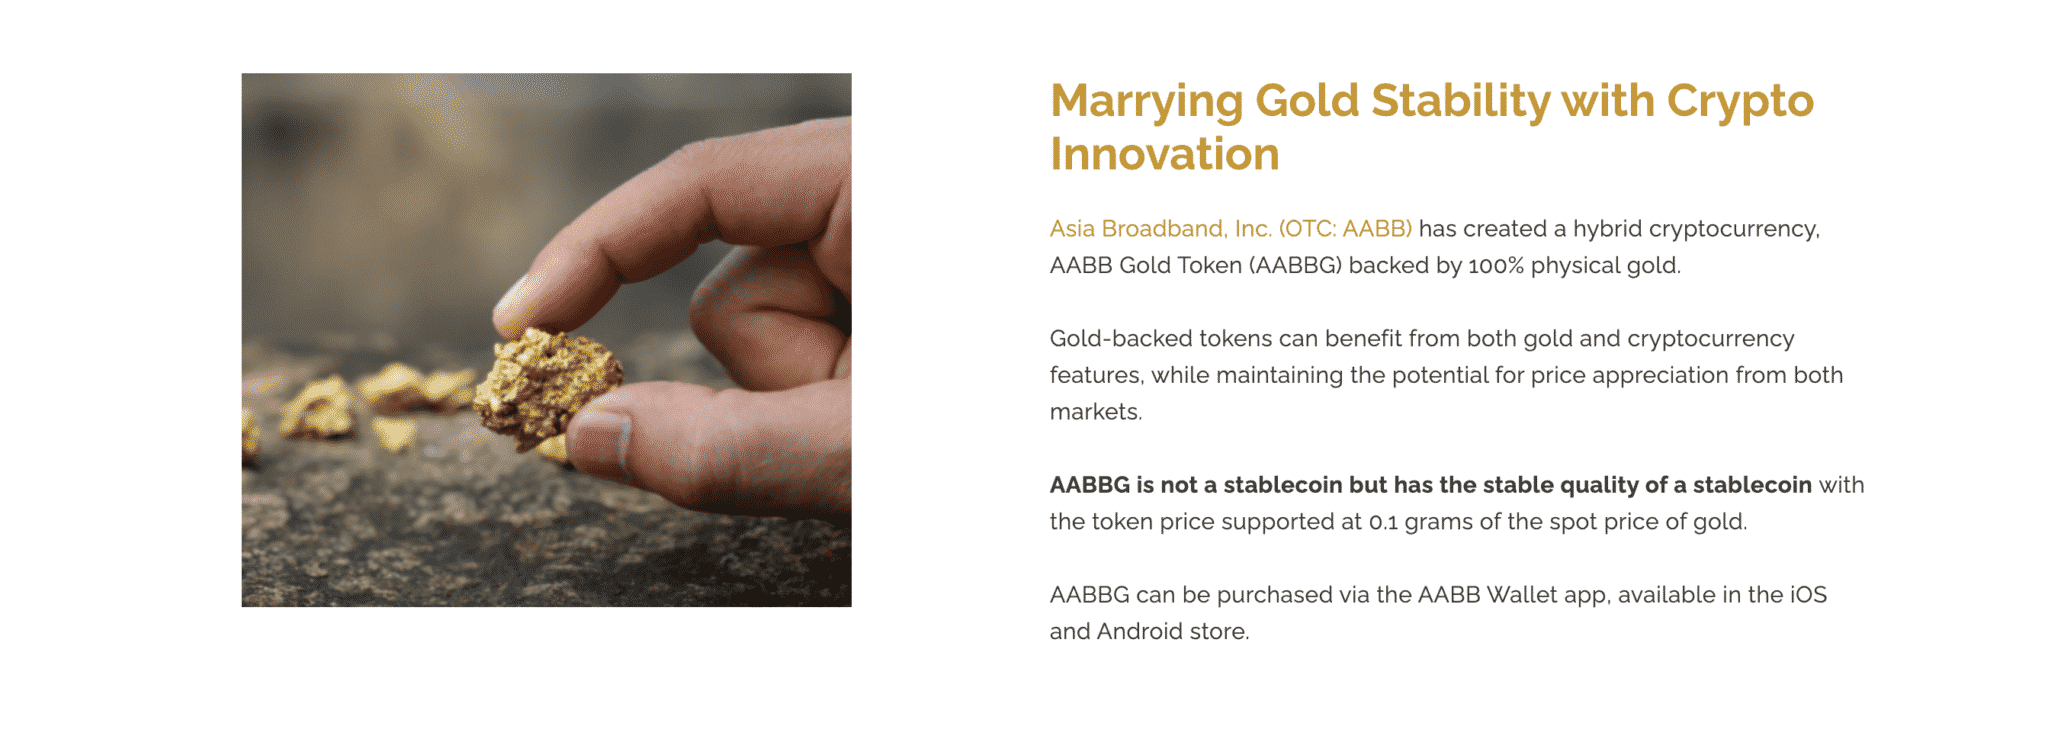 AABB Gold Token